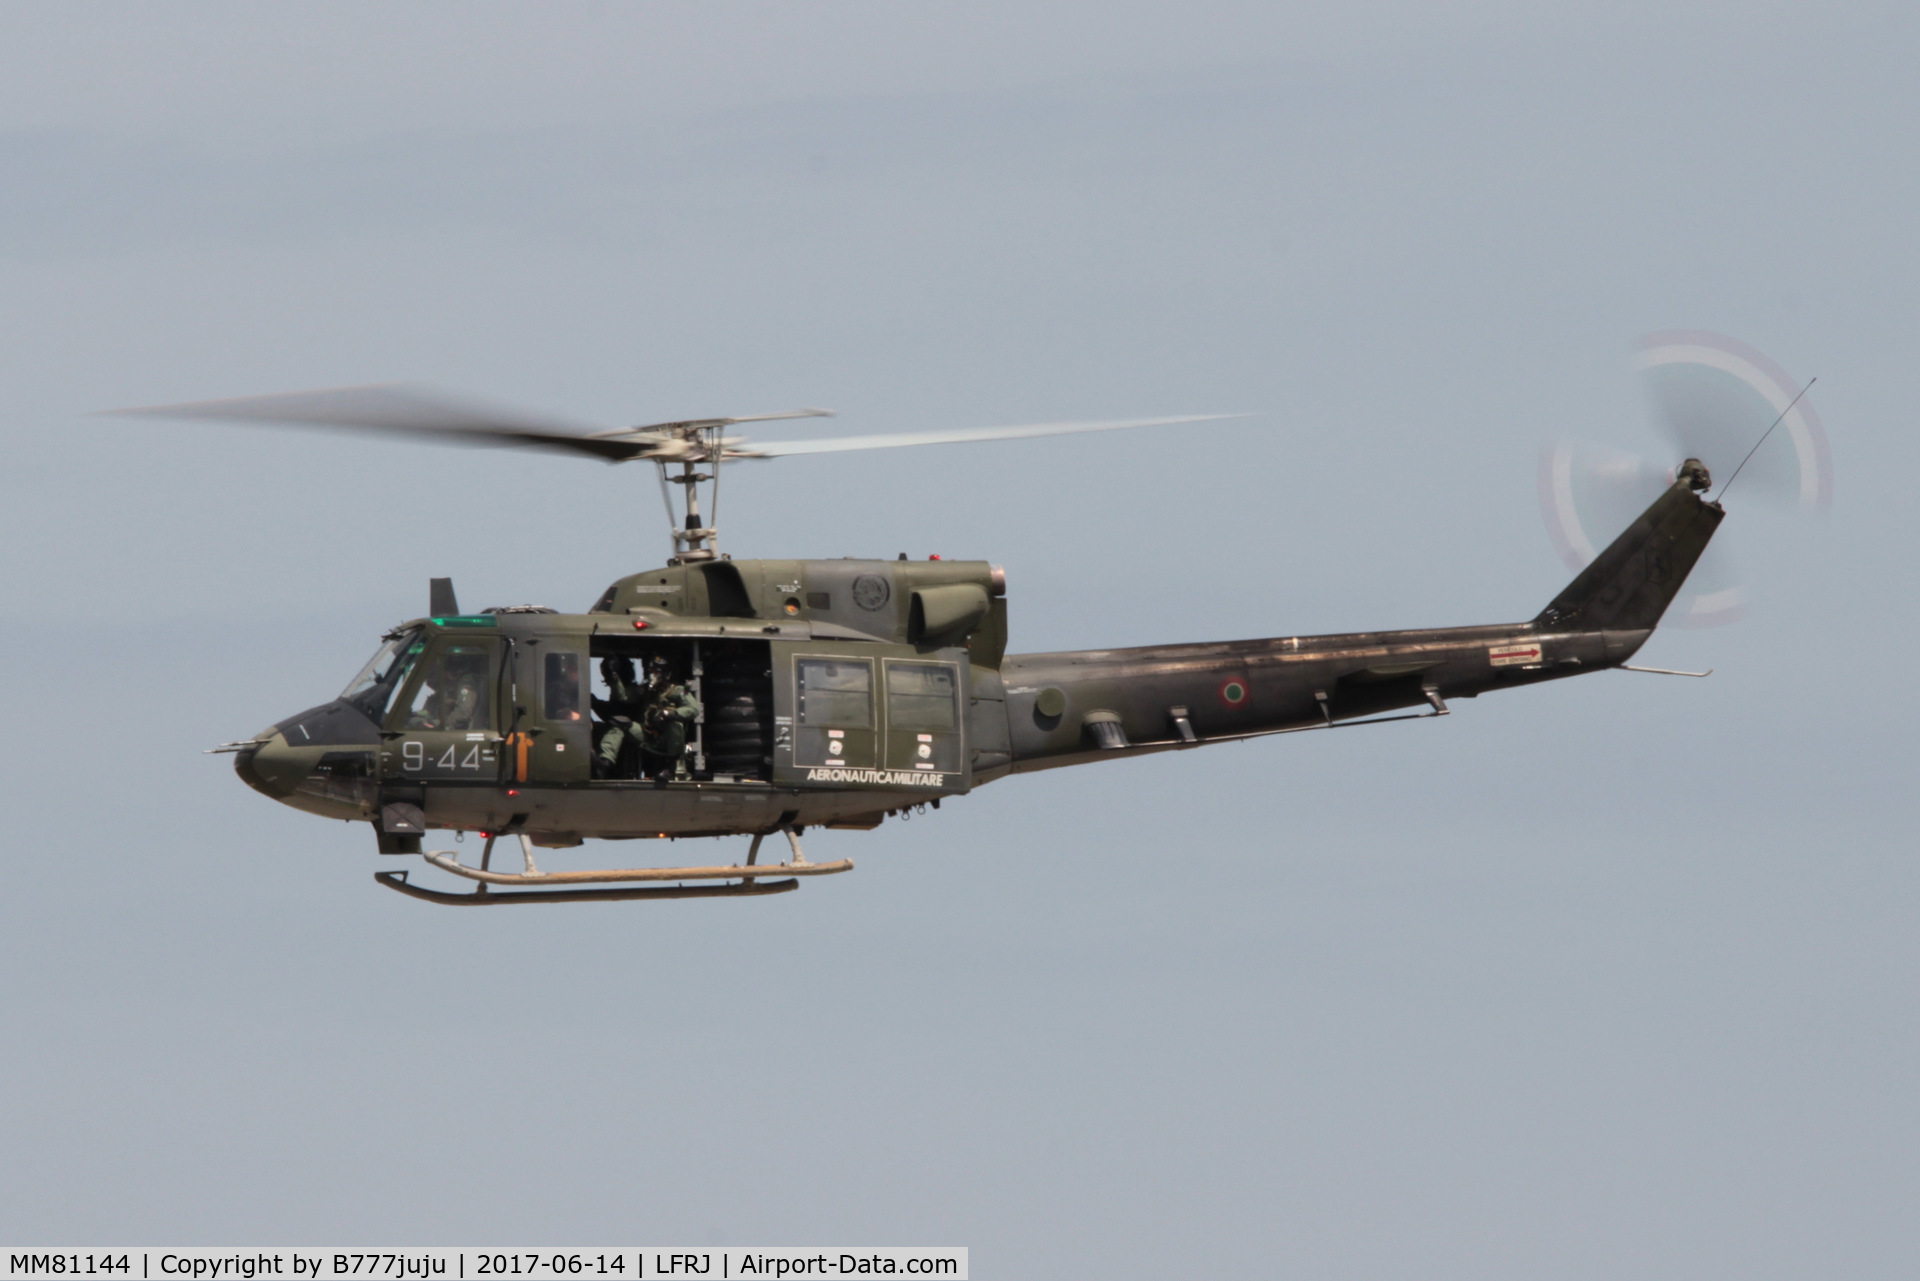 MM81144, Agusta AB-212AM C/N 5801, new code 9-44